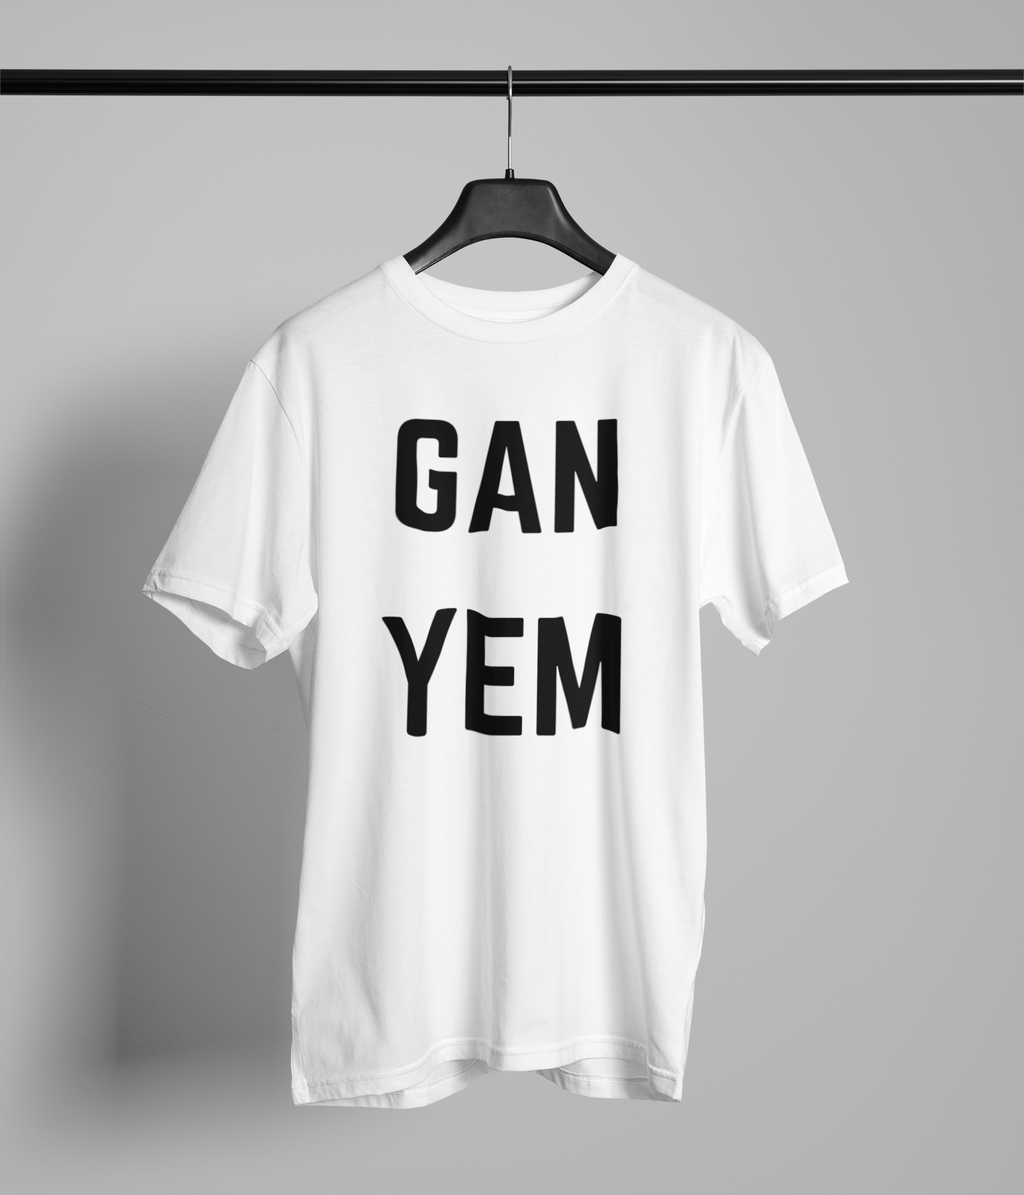 GAN YEM Northern Slang T-Shirt Unisex